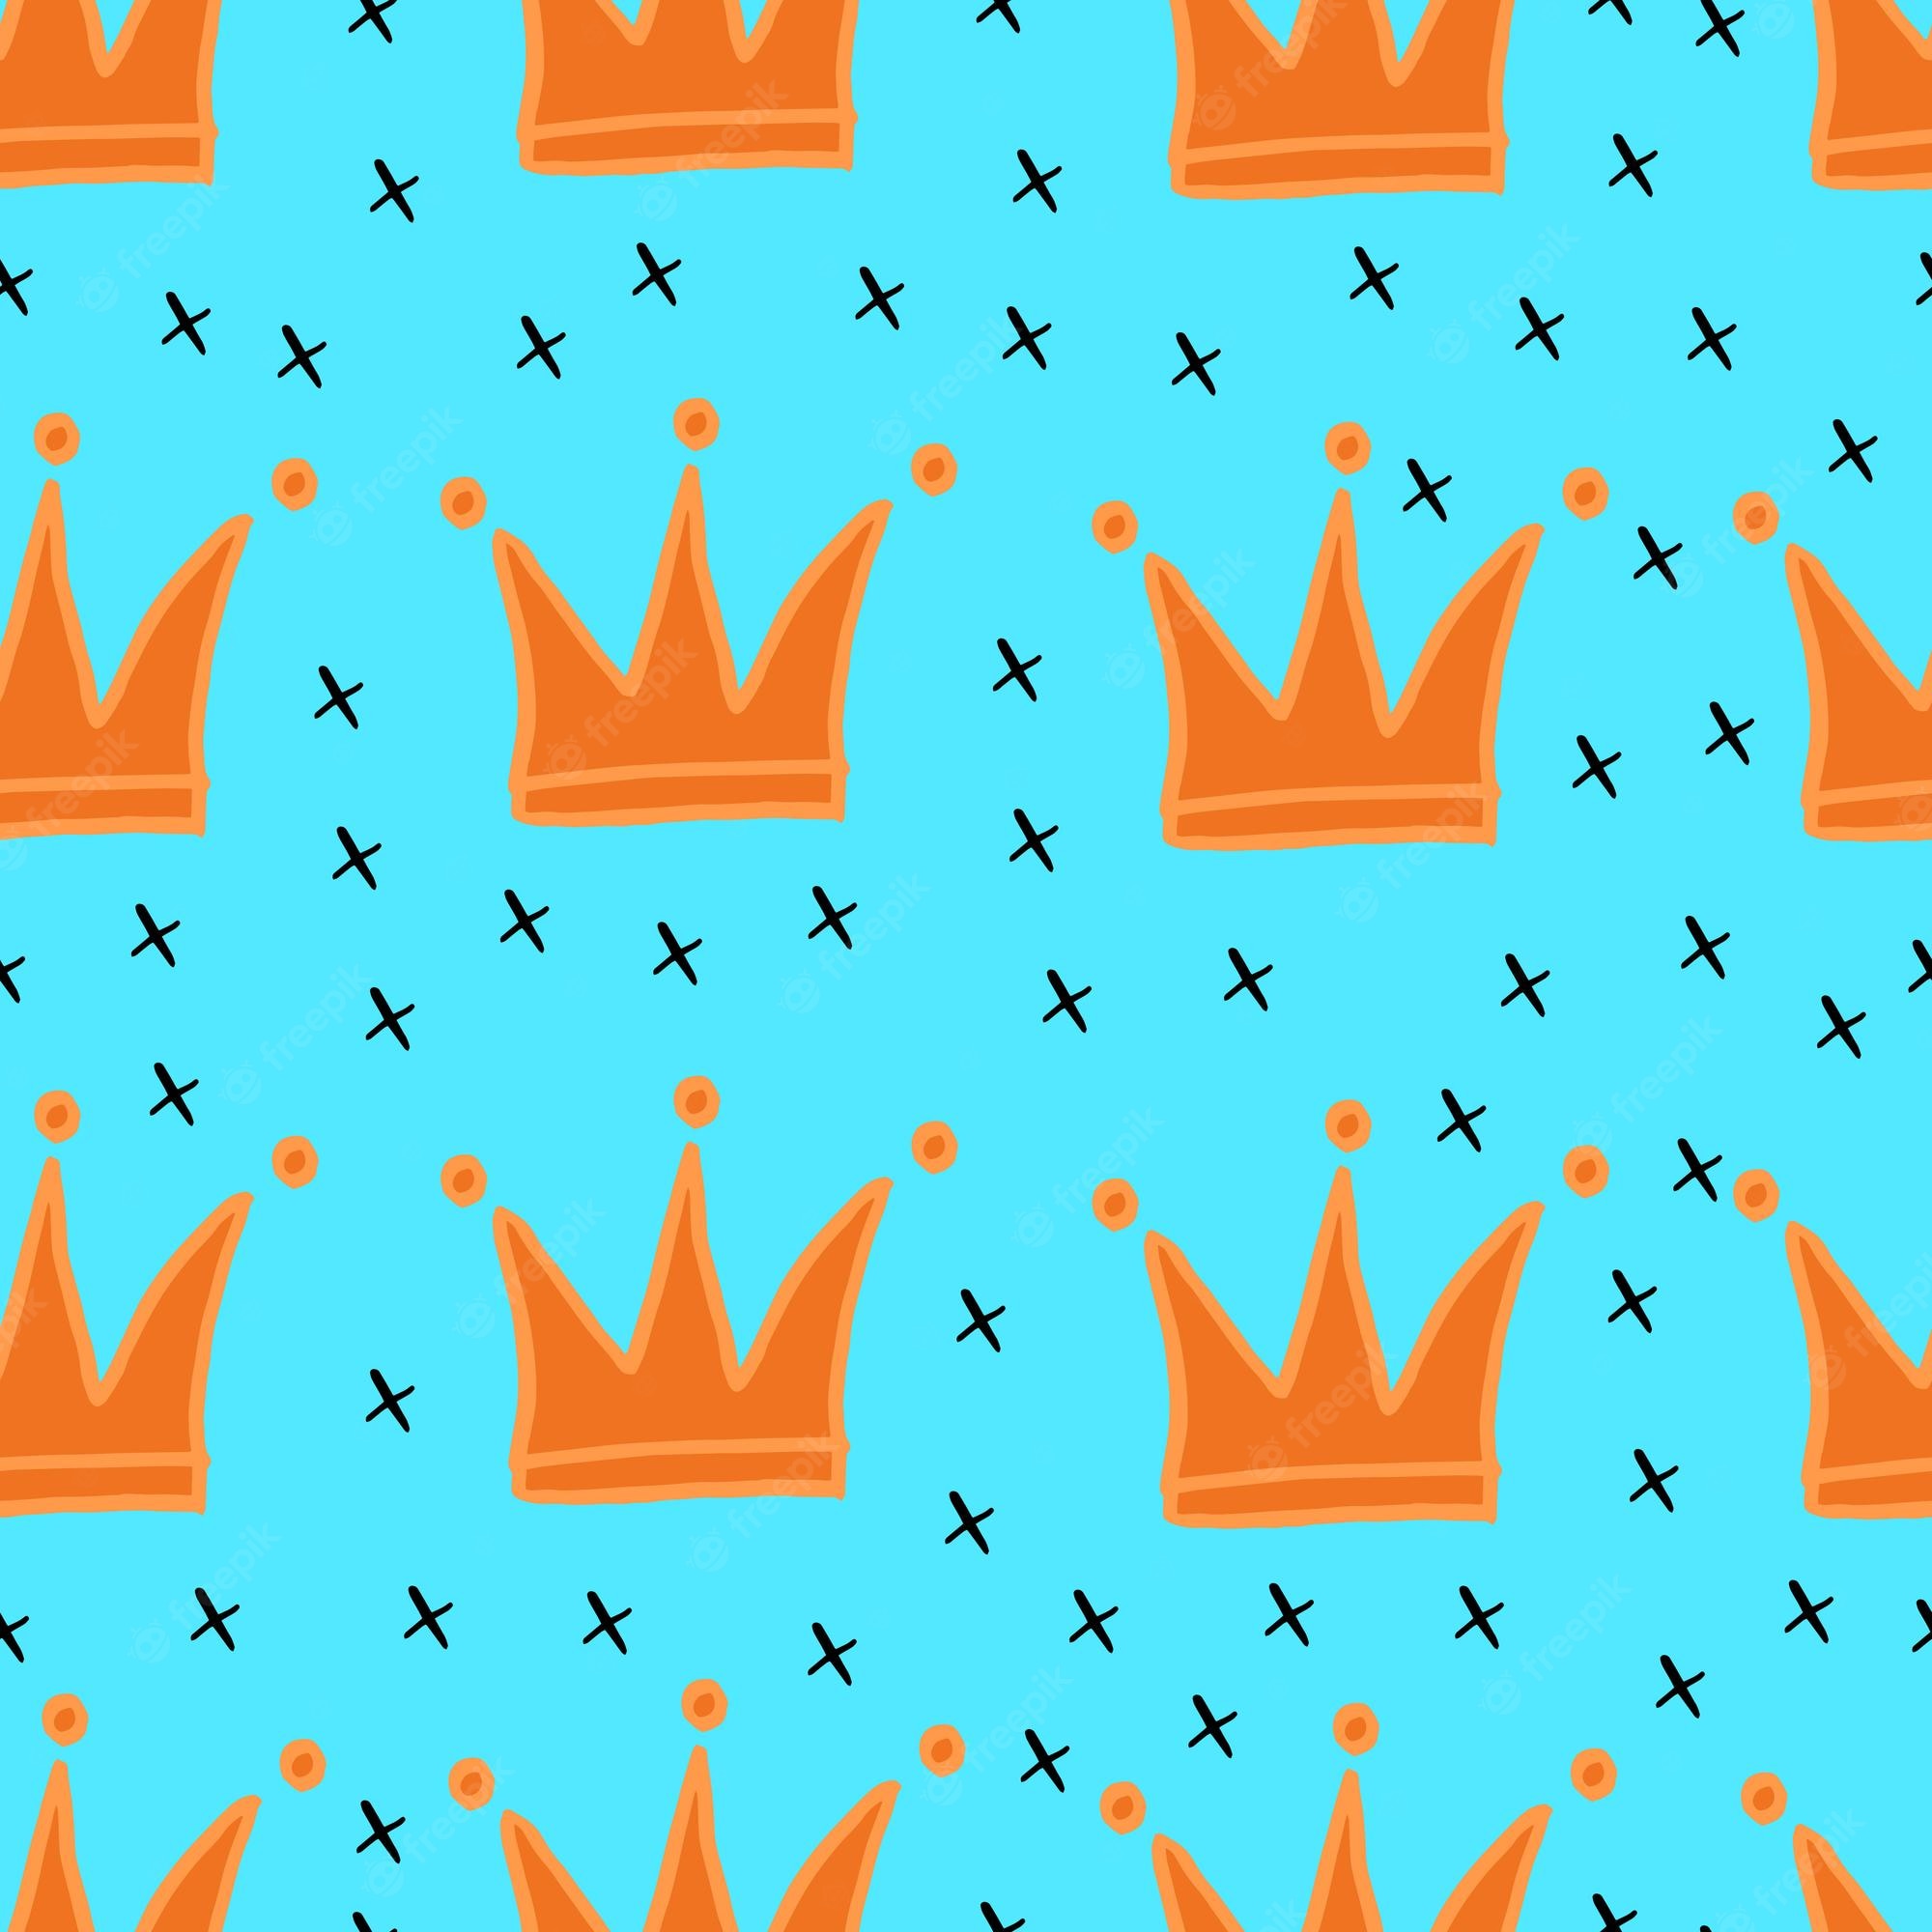 Wallpaper queen crown Image. Free Vectors, & PSD